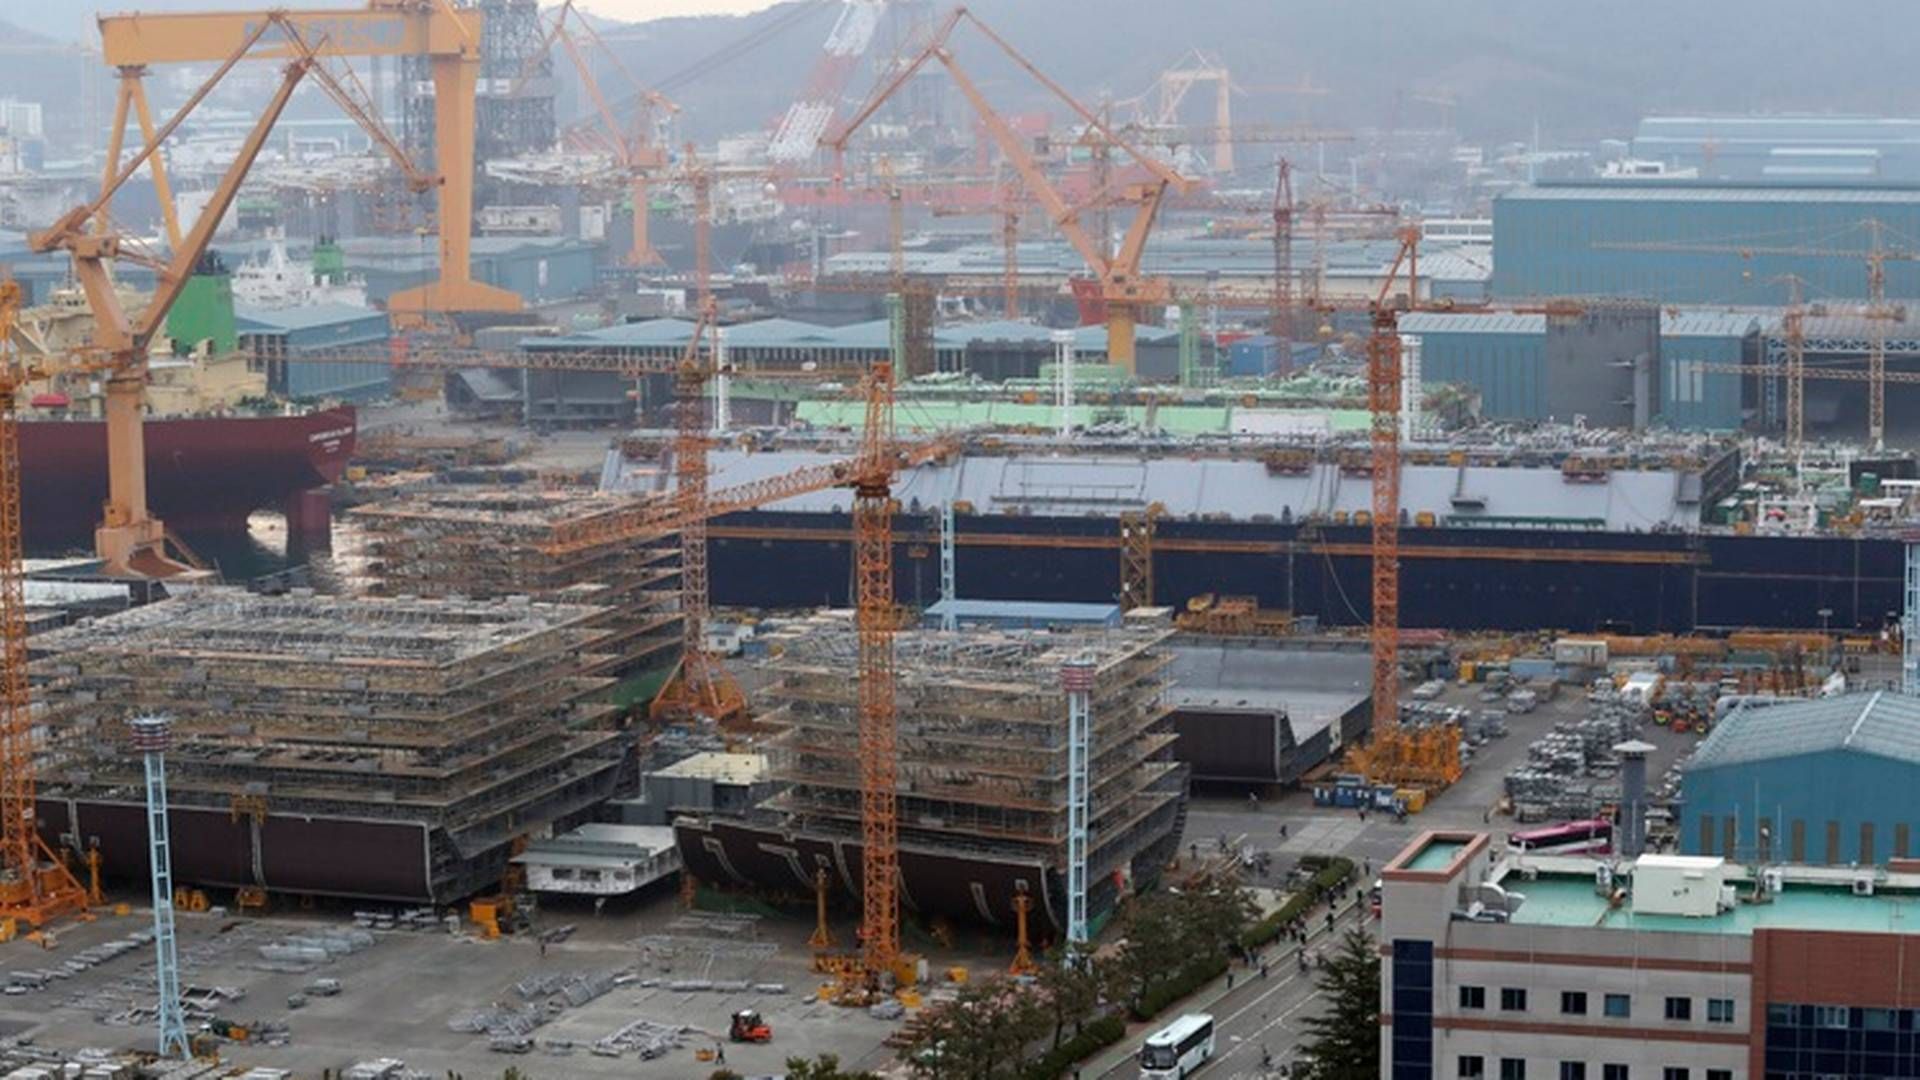 Planen om at styrke de nationale skibsværfter præsenteres i lyset af ”den globale skibsbygningsindustris opsving, der giver medvind til Koreas skibsbygningsindustri,” siger viceminister Youngjin Jang. | Foto: Daewoo Shipbuilding & Marine Engineering